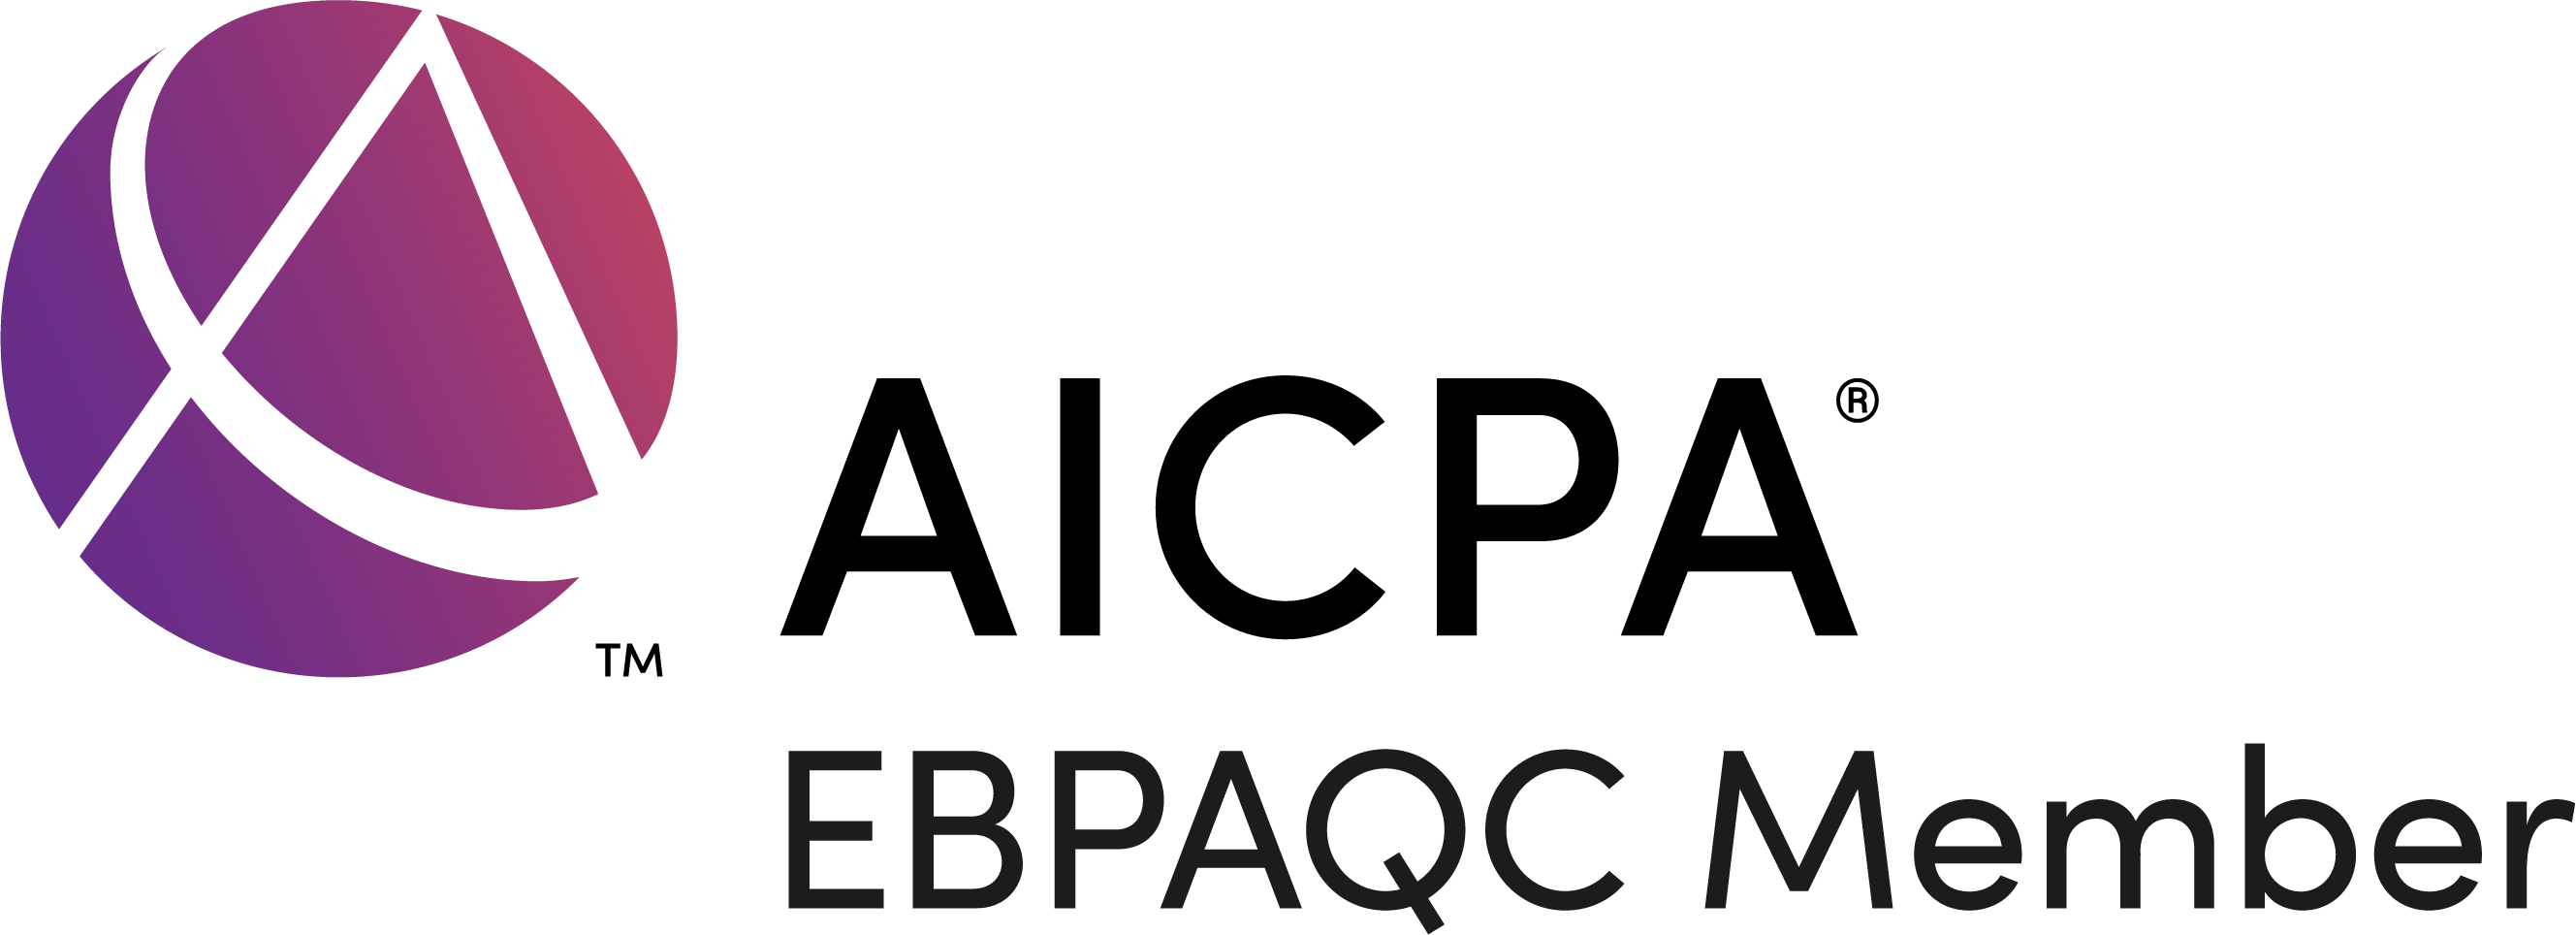 American Institute of CPAs (AICPA) Member Logo